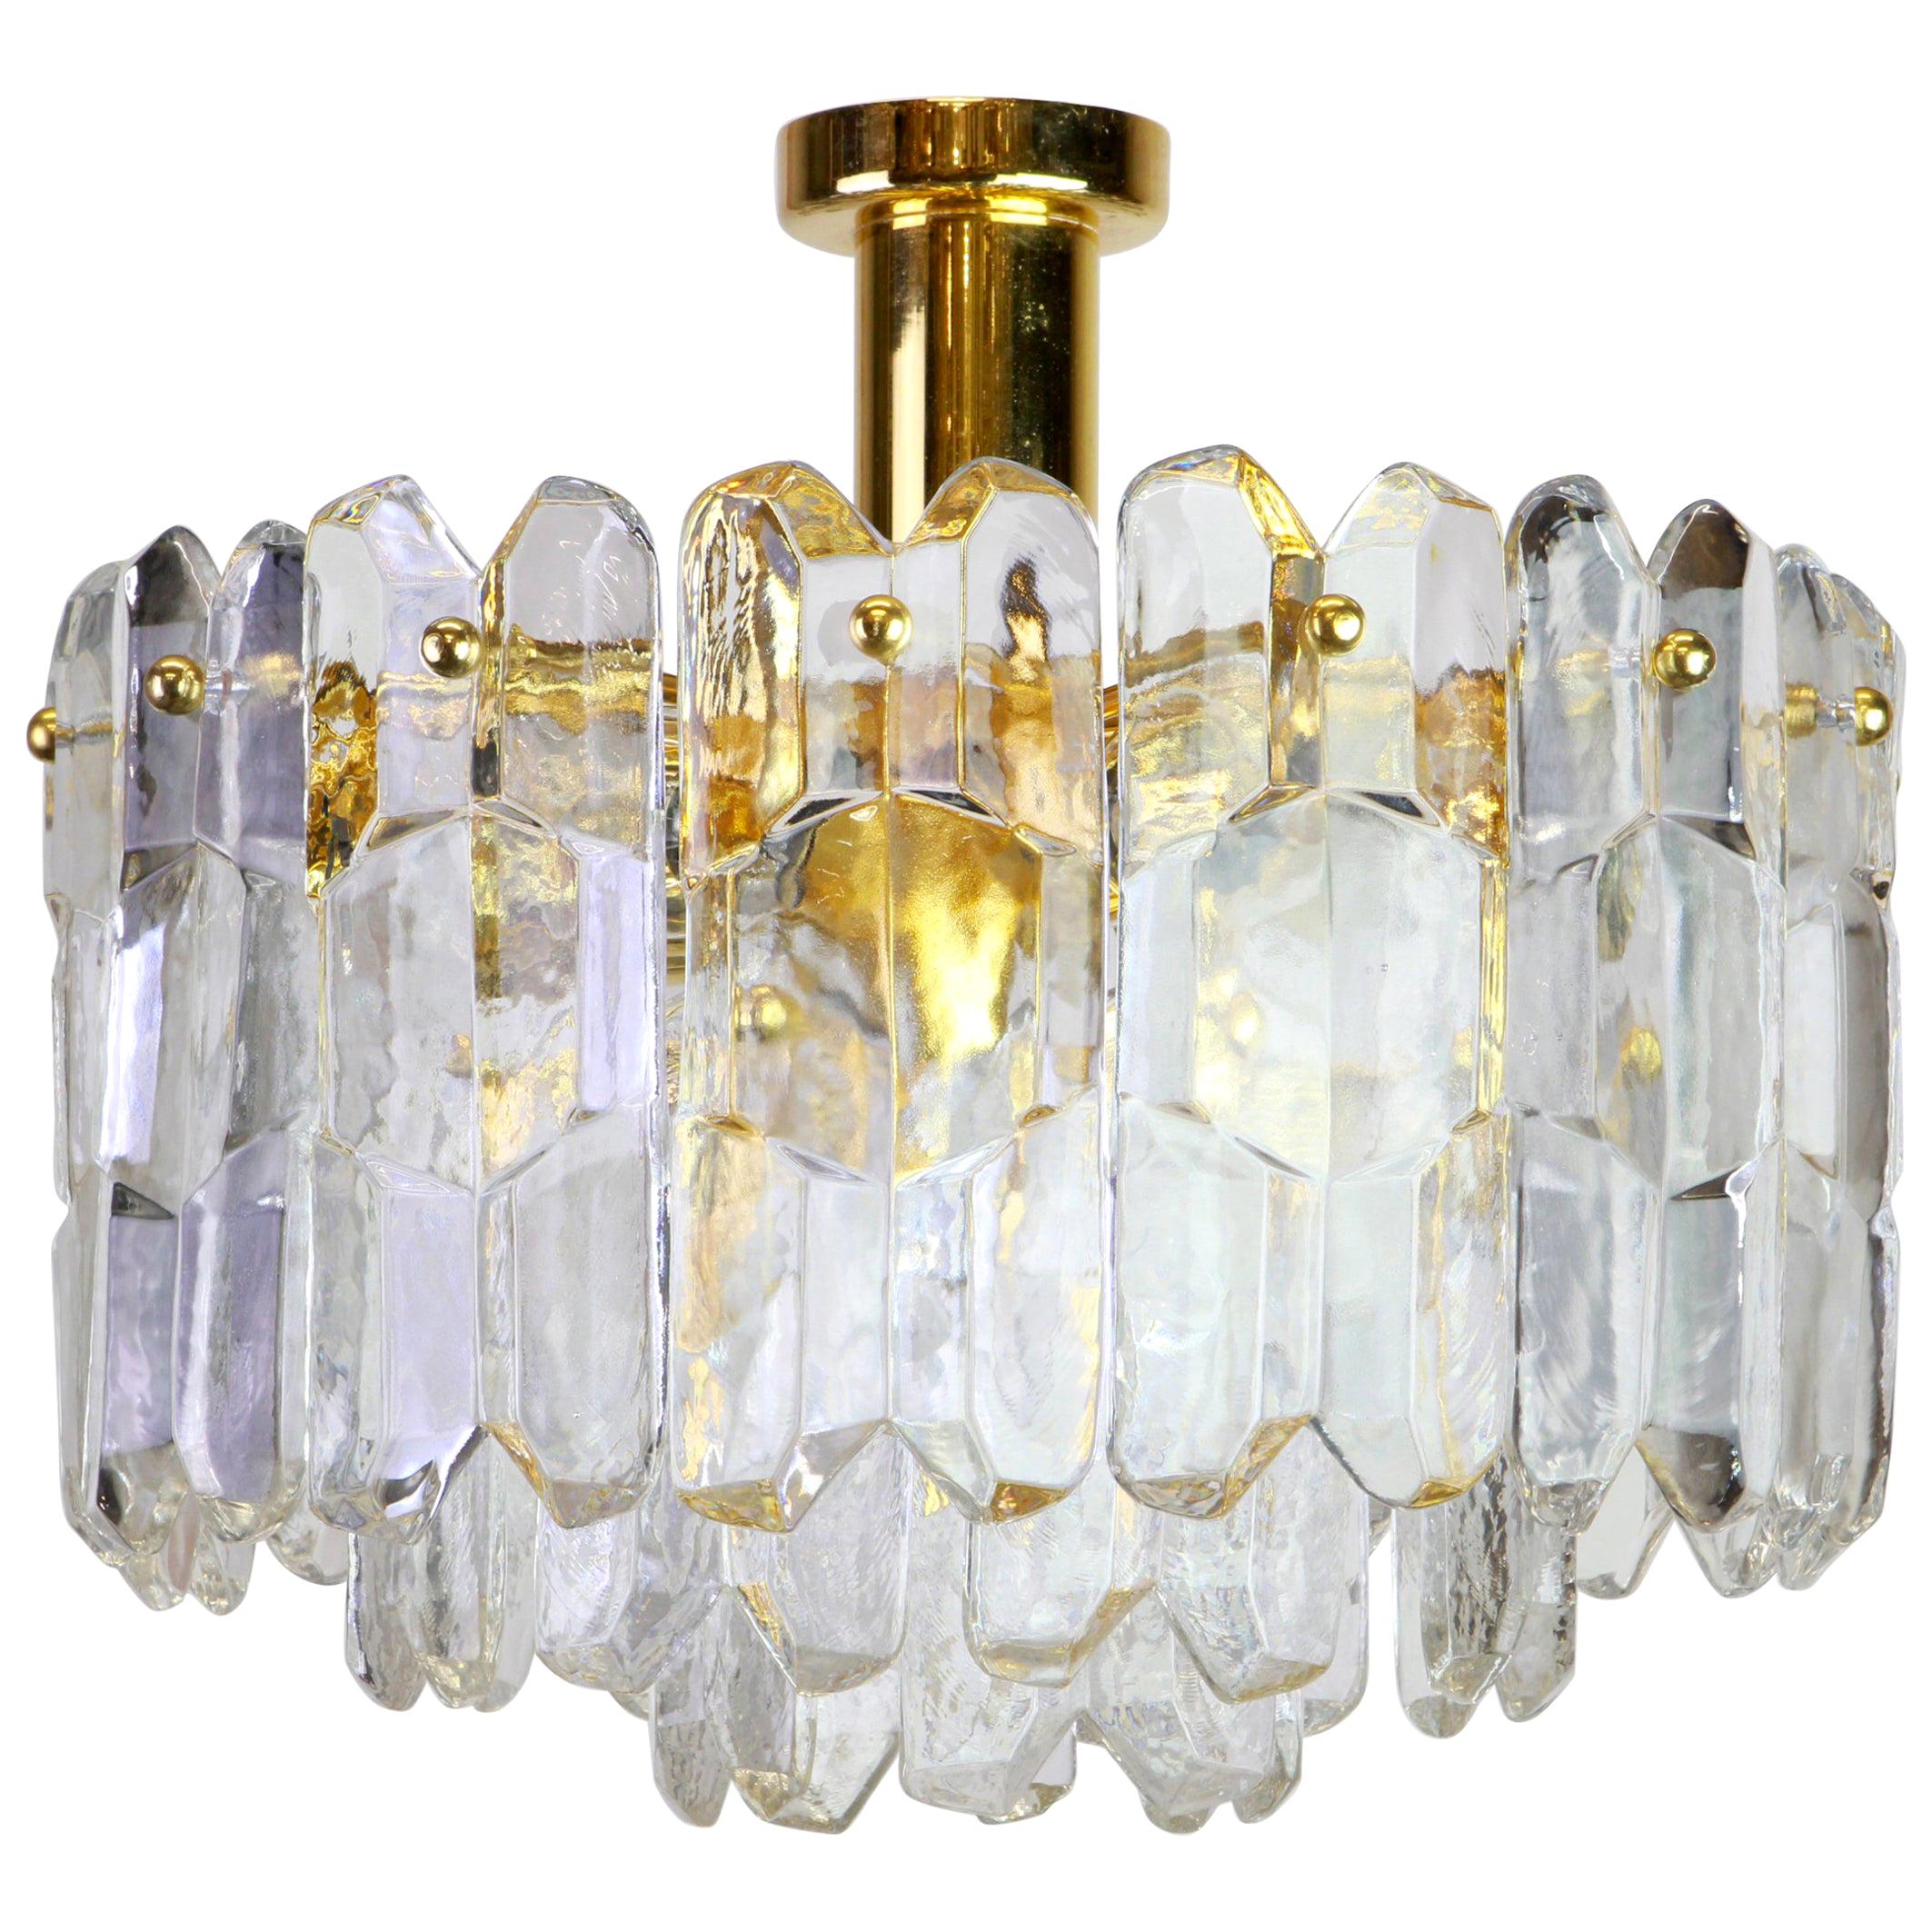 Diese wunderschöne Leuchte aus vergoldetem Messing besteht aus Murano-Kristallgläsern auf einem vergoldeten Messingrahmen. Es wurde von Kalmar (Serie: Palazzo), Österreich, hergestellt, ca. 1970-1979.

Es braucht sieben kleine Glühbirnen und ist